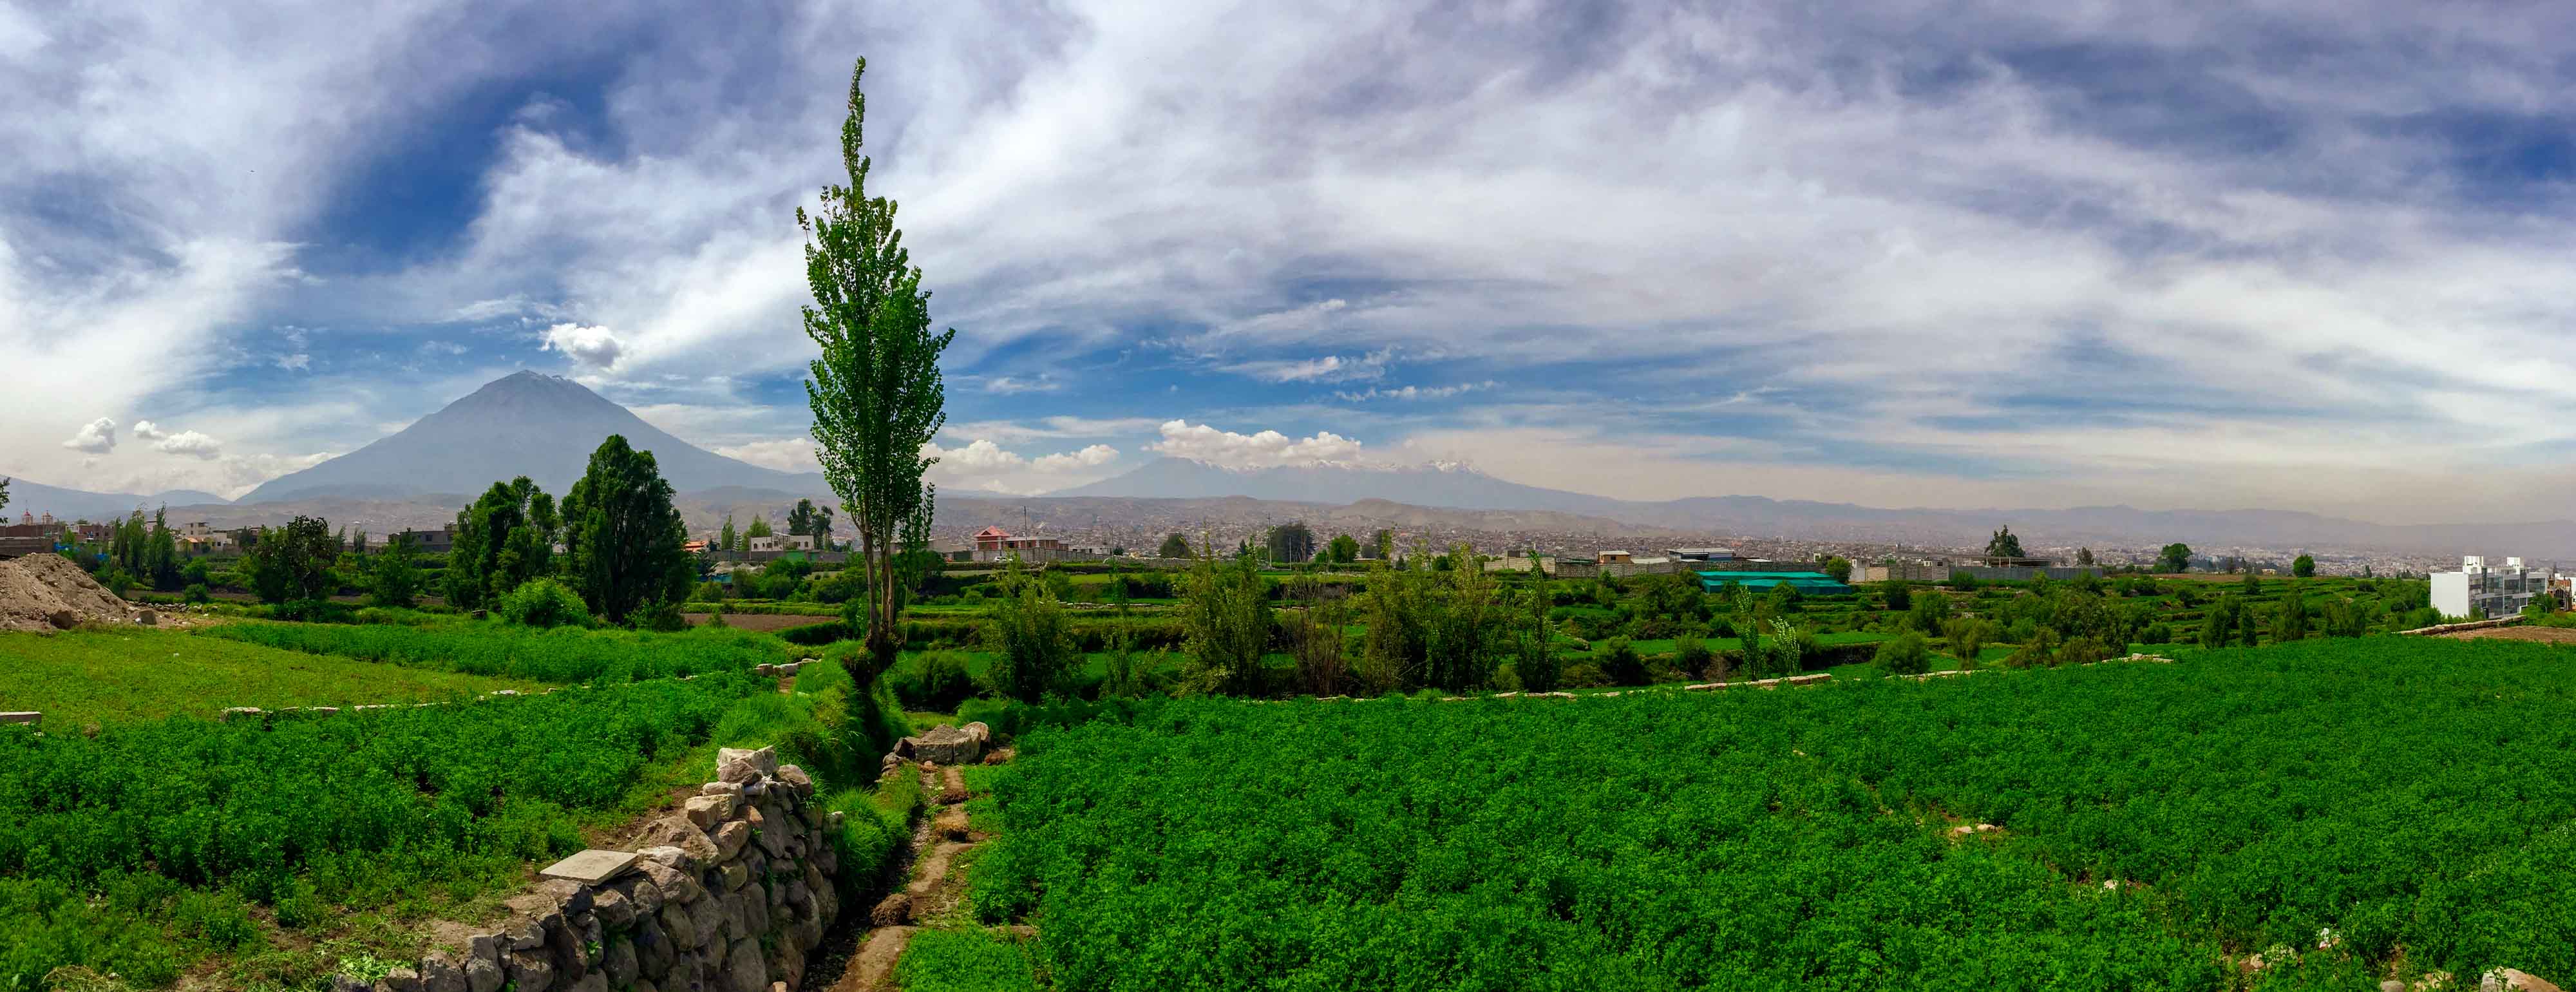 Panorama sur toute l'étendue de la ville d'Arequipa